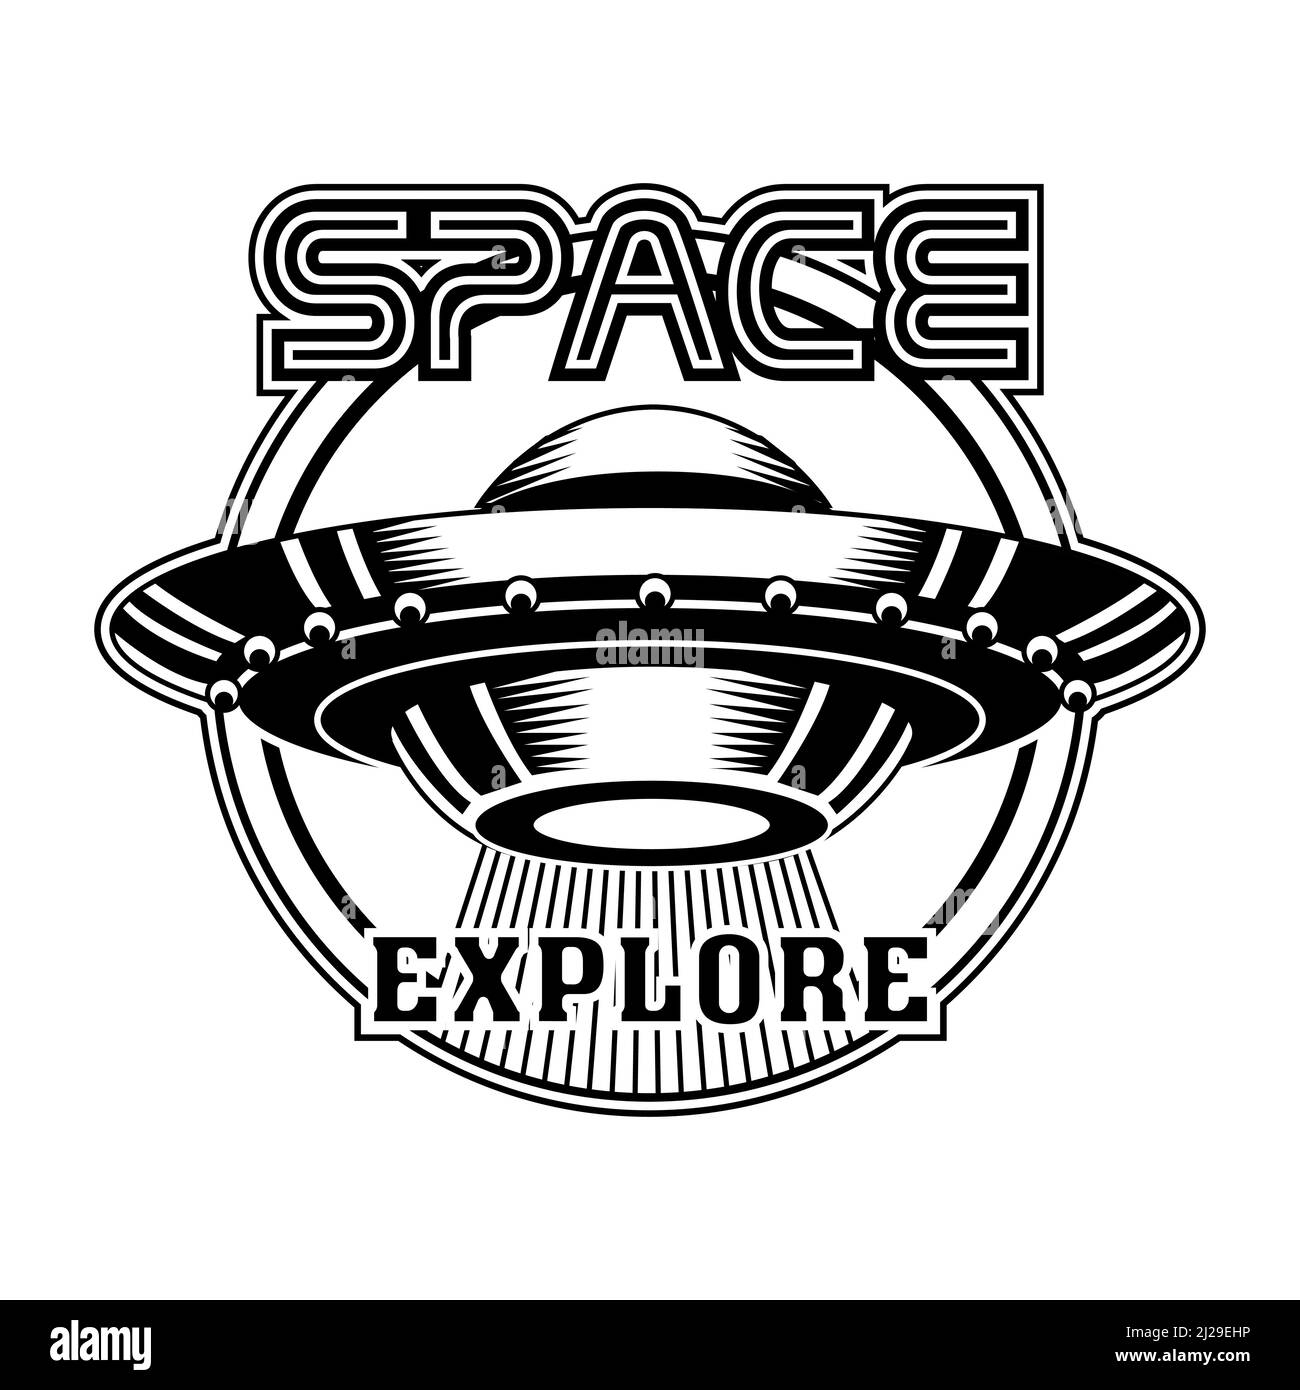 Retro Abzeichen mit UFO Vektor Illustration. Monochromes außerirdisches Raumschiff für Aliens. Wissenschaft und Weltraumforschung Konzept kann für retr verwendet werden Stock Vektor